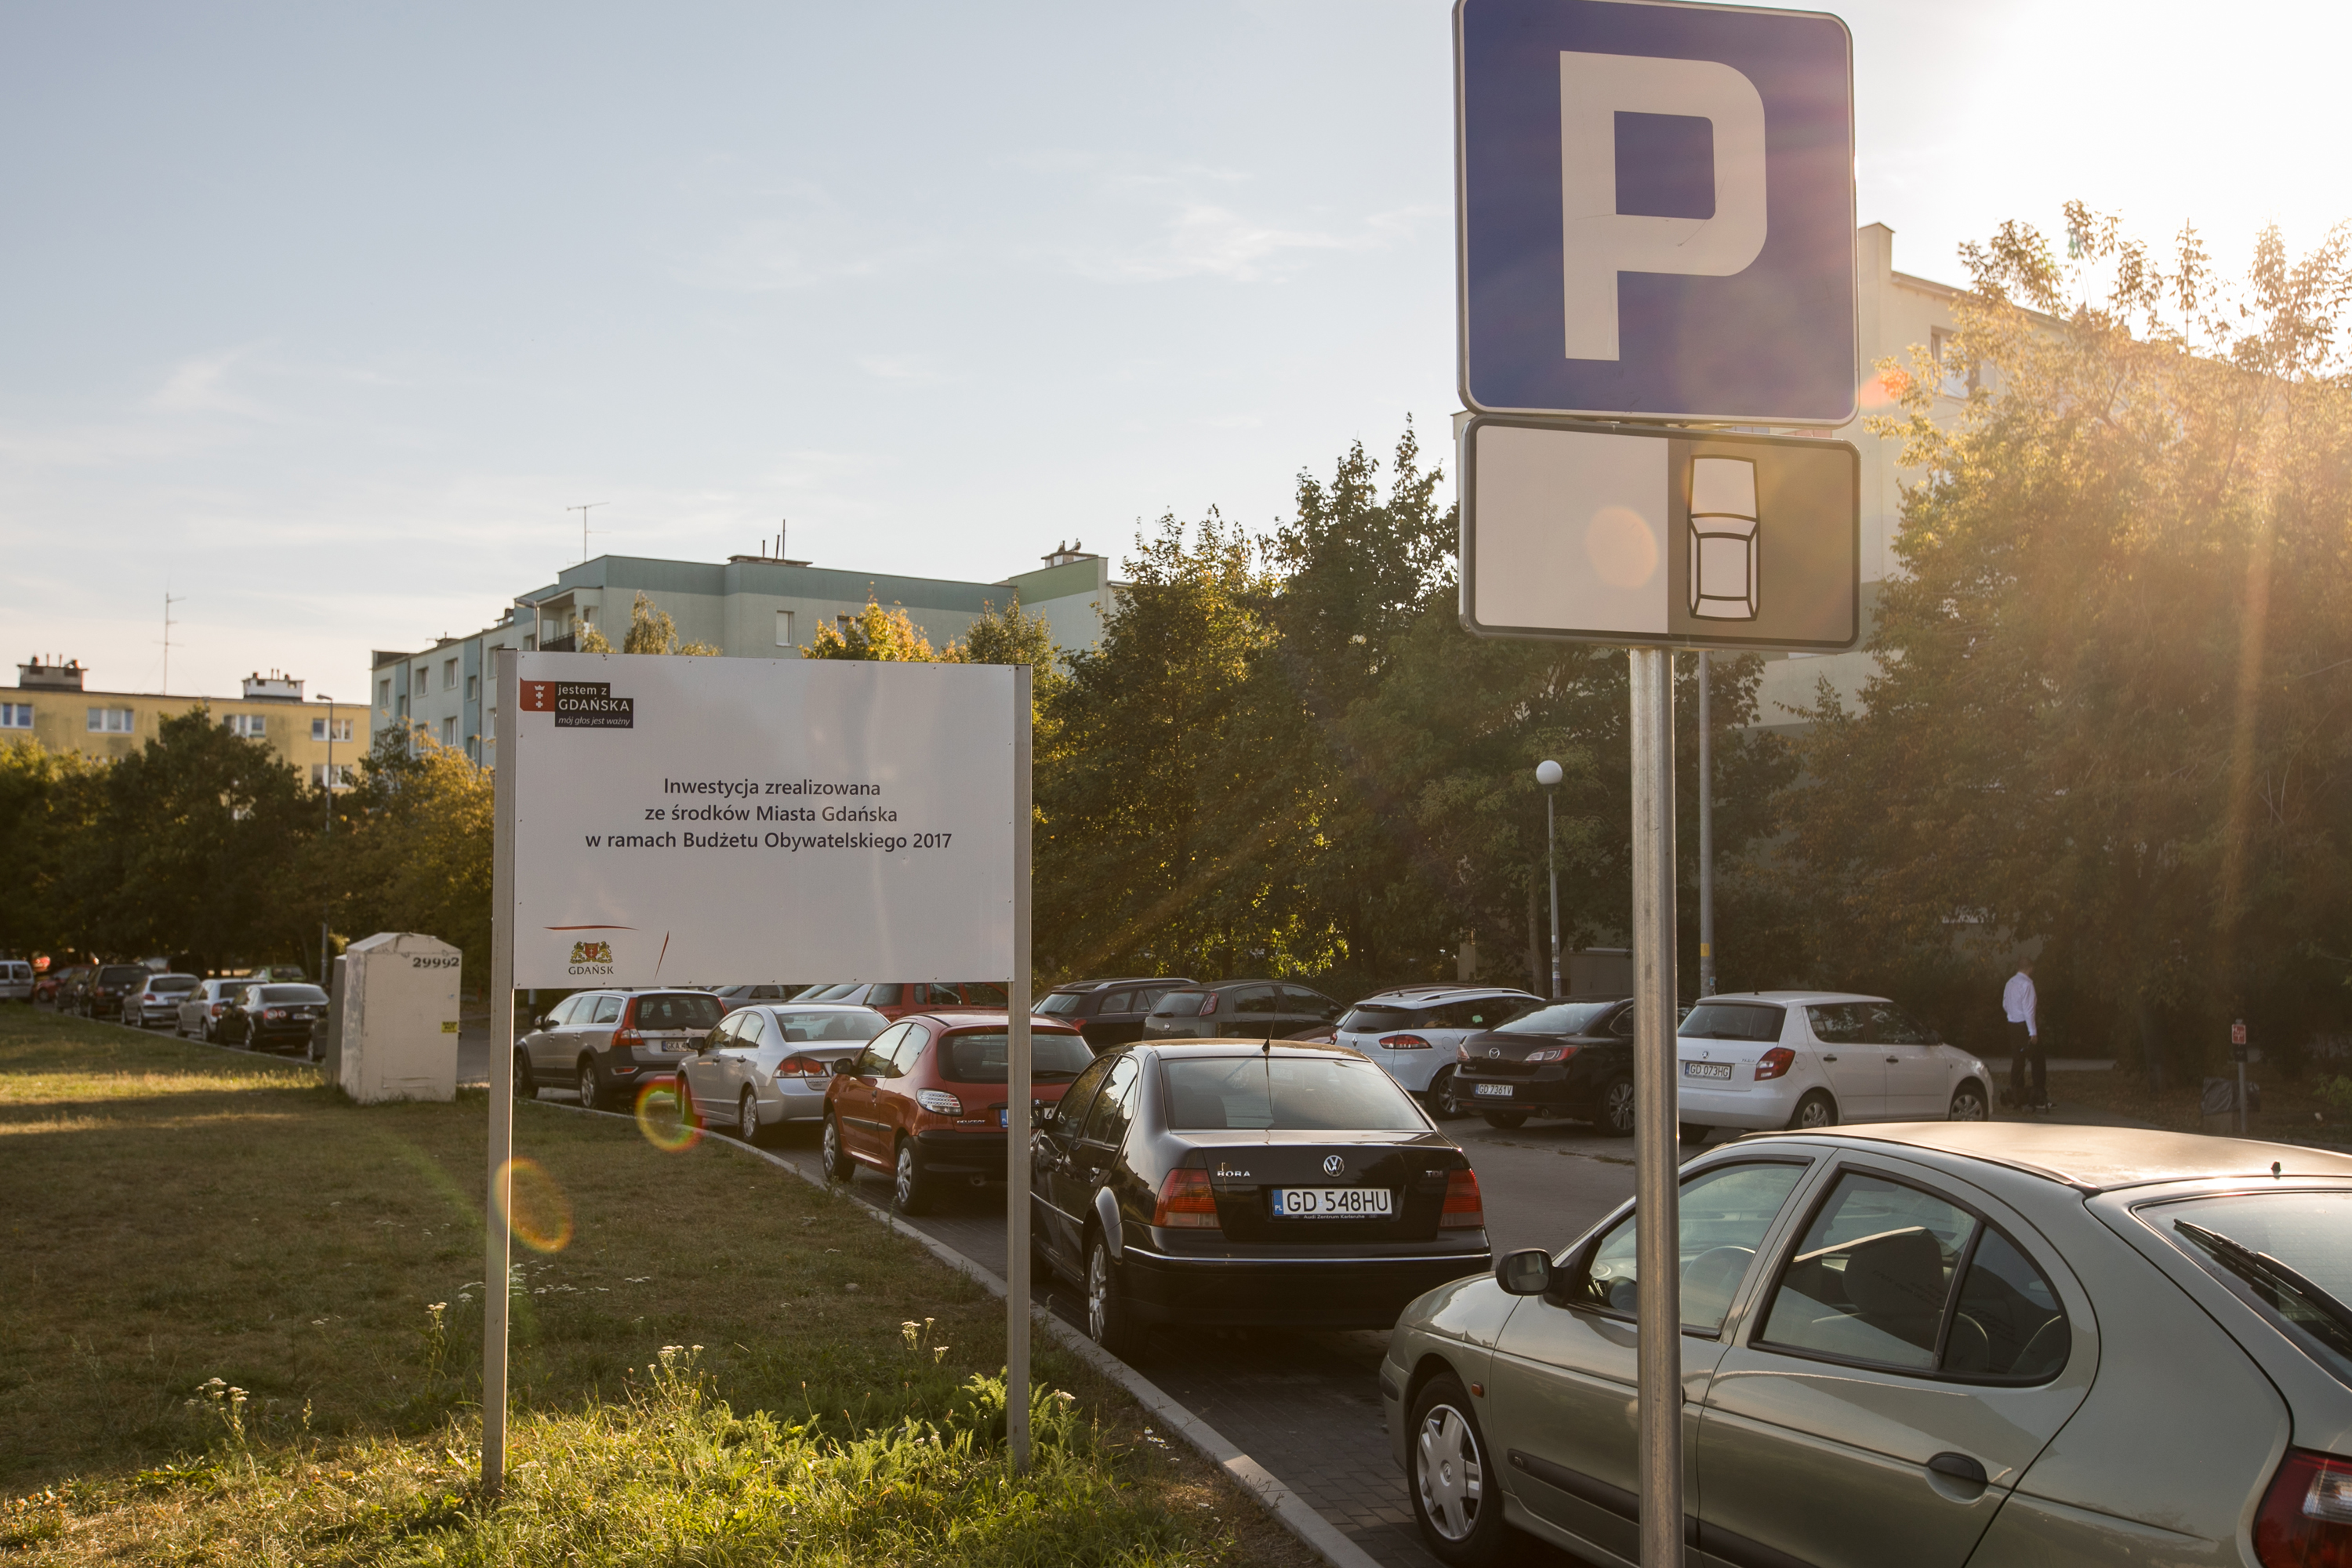 widok na zaparkowane samochody, znak drogowy informujący o miejscach parkingowych oraz tablica informująca o wykonanej inwestycji w ramch Budżetu Obywatelskiego 2017